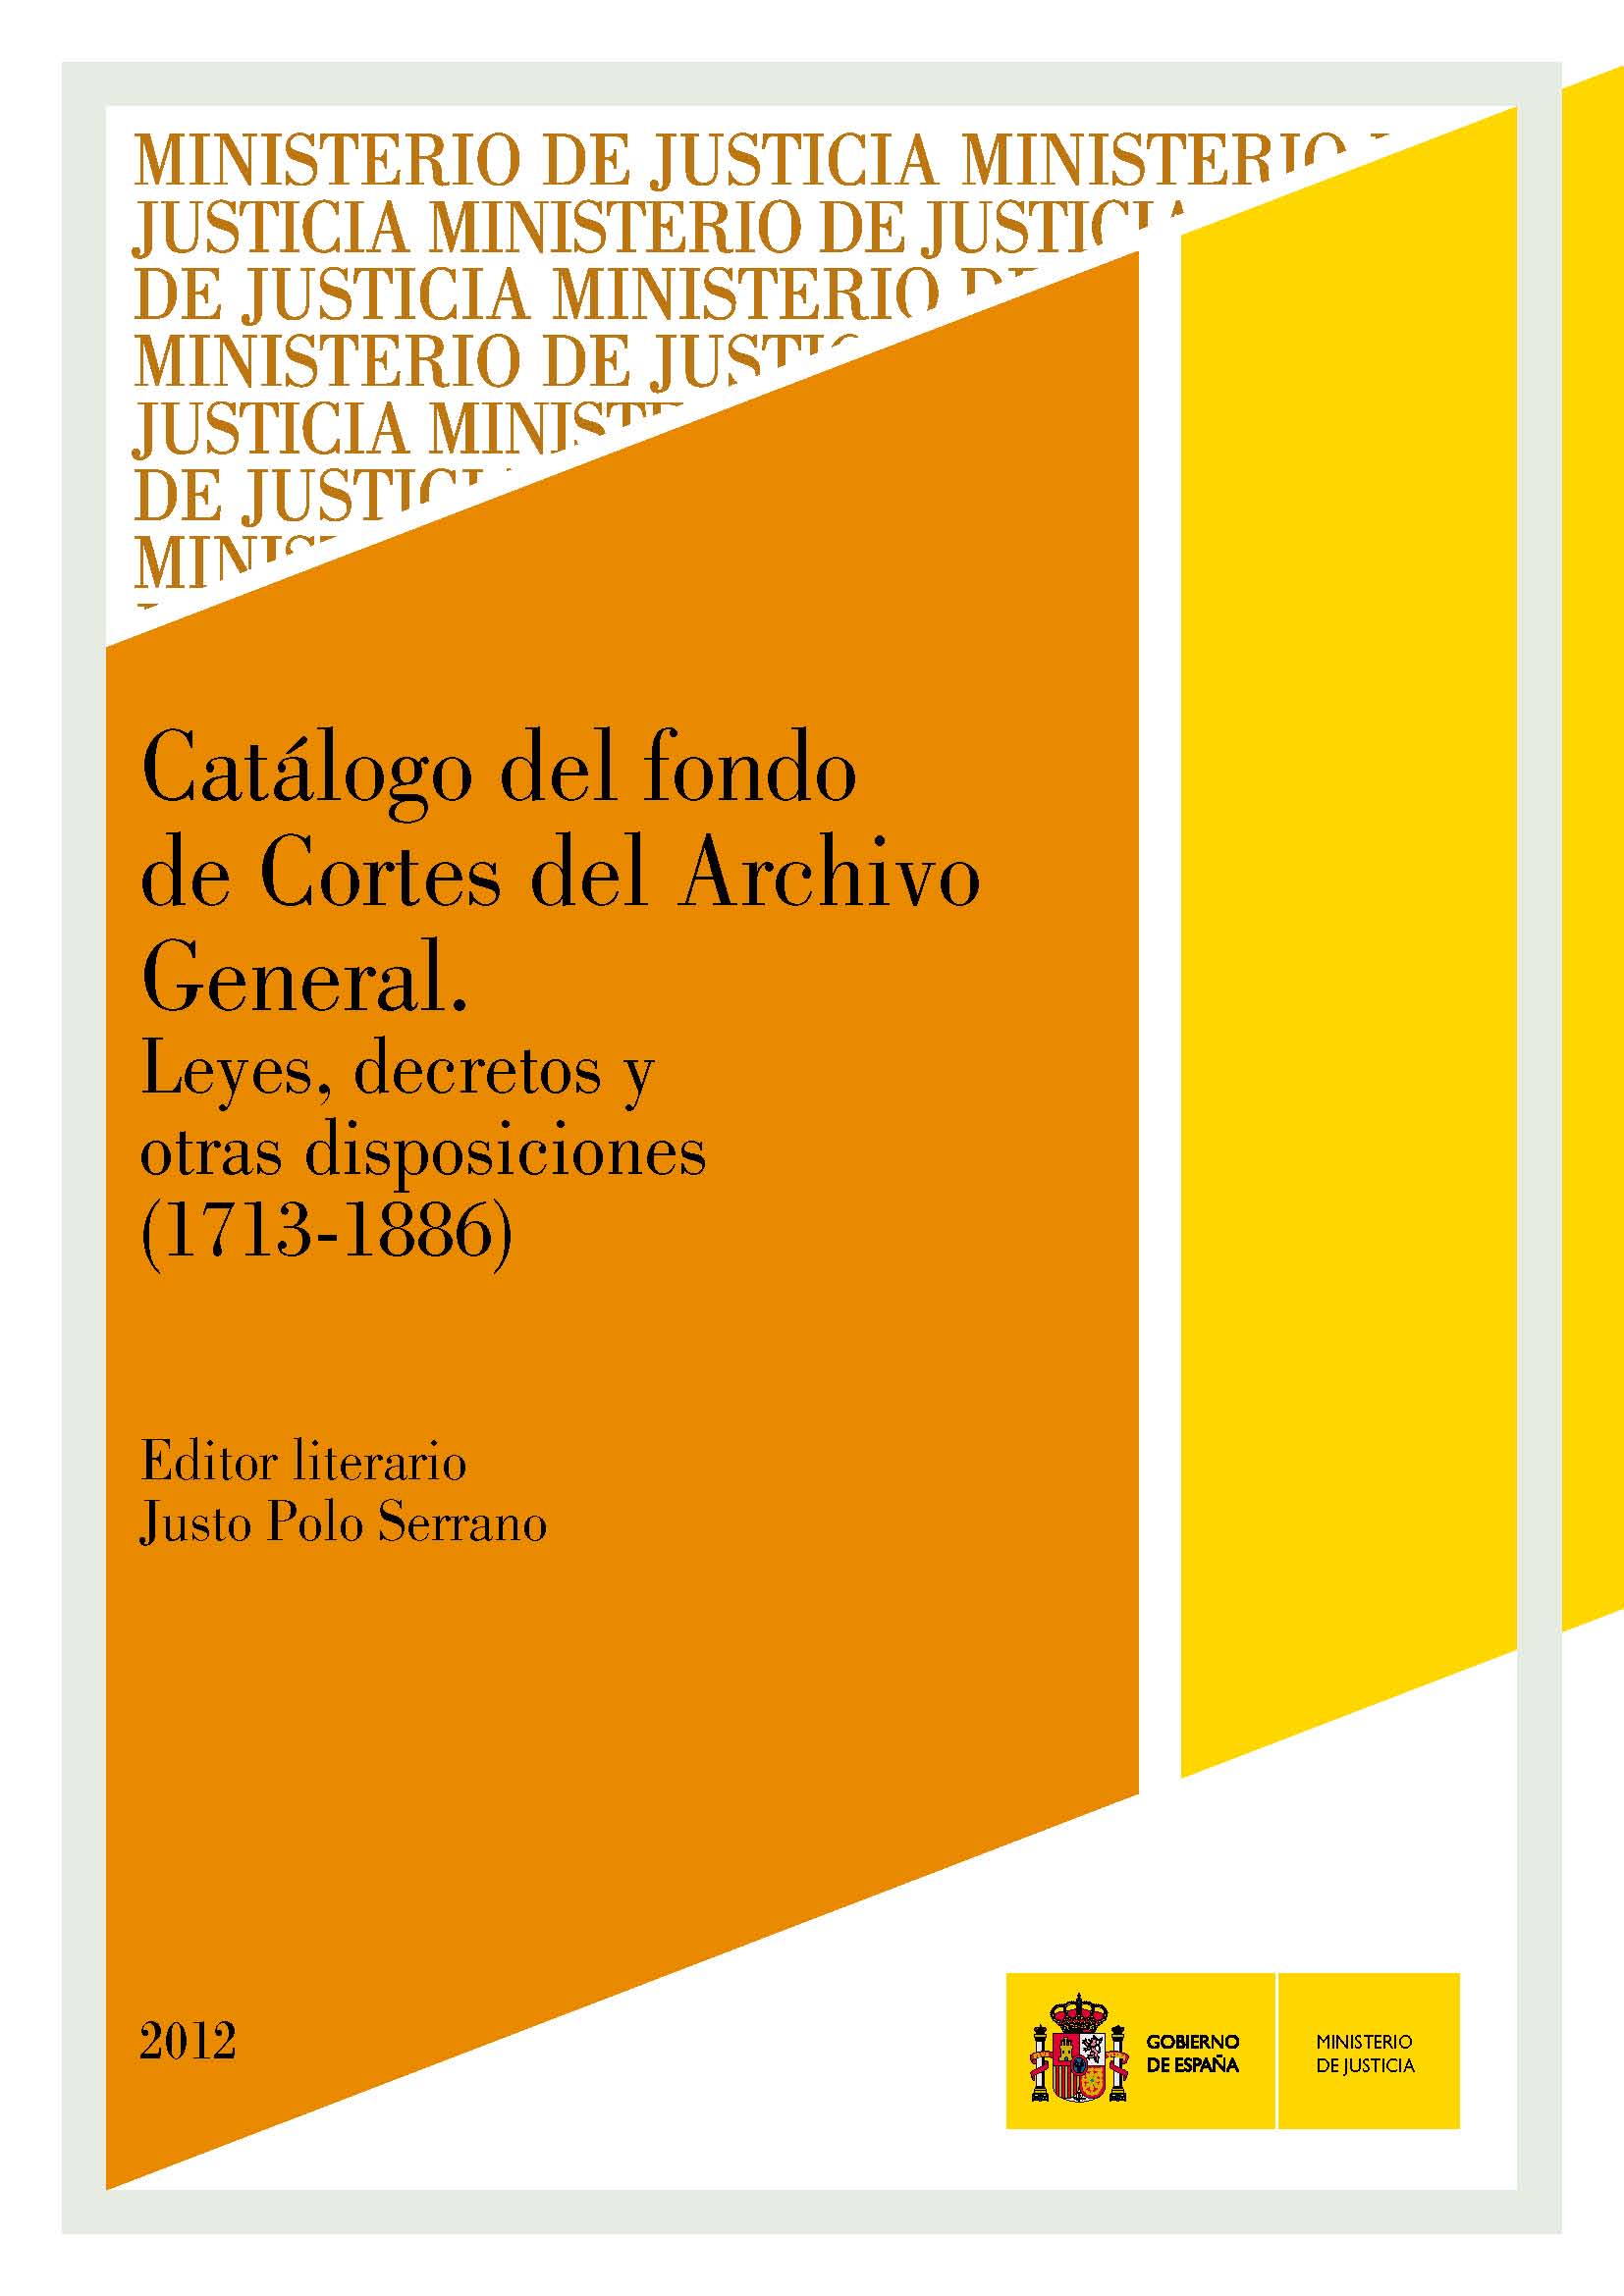 View details of CATÁLOGO DEL FONDO DE CORTES DEL ARCHIVO GENERAL. Leyes, decretos y otras disposiciones 1713-1886